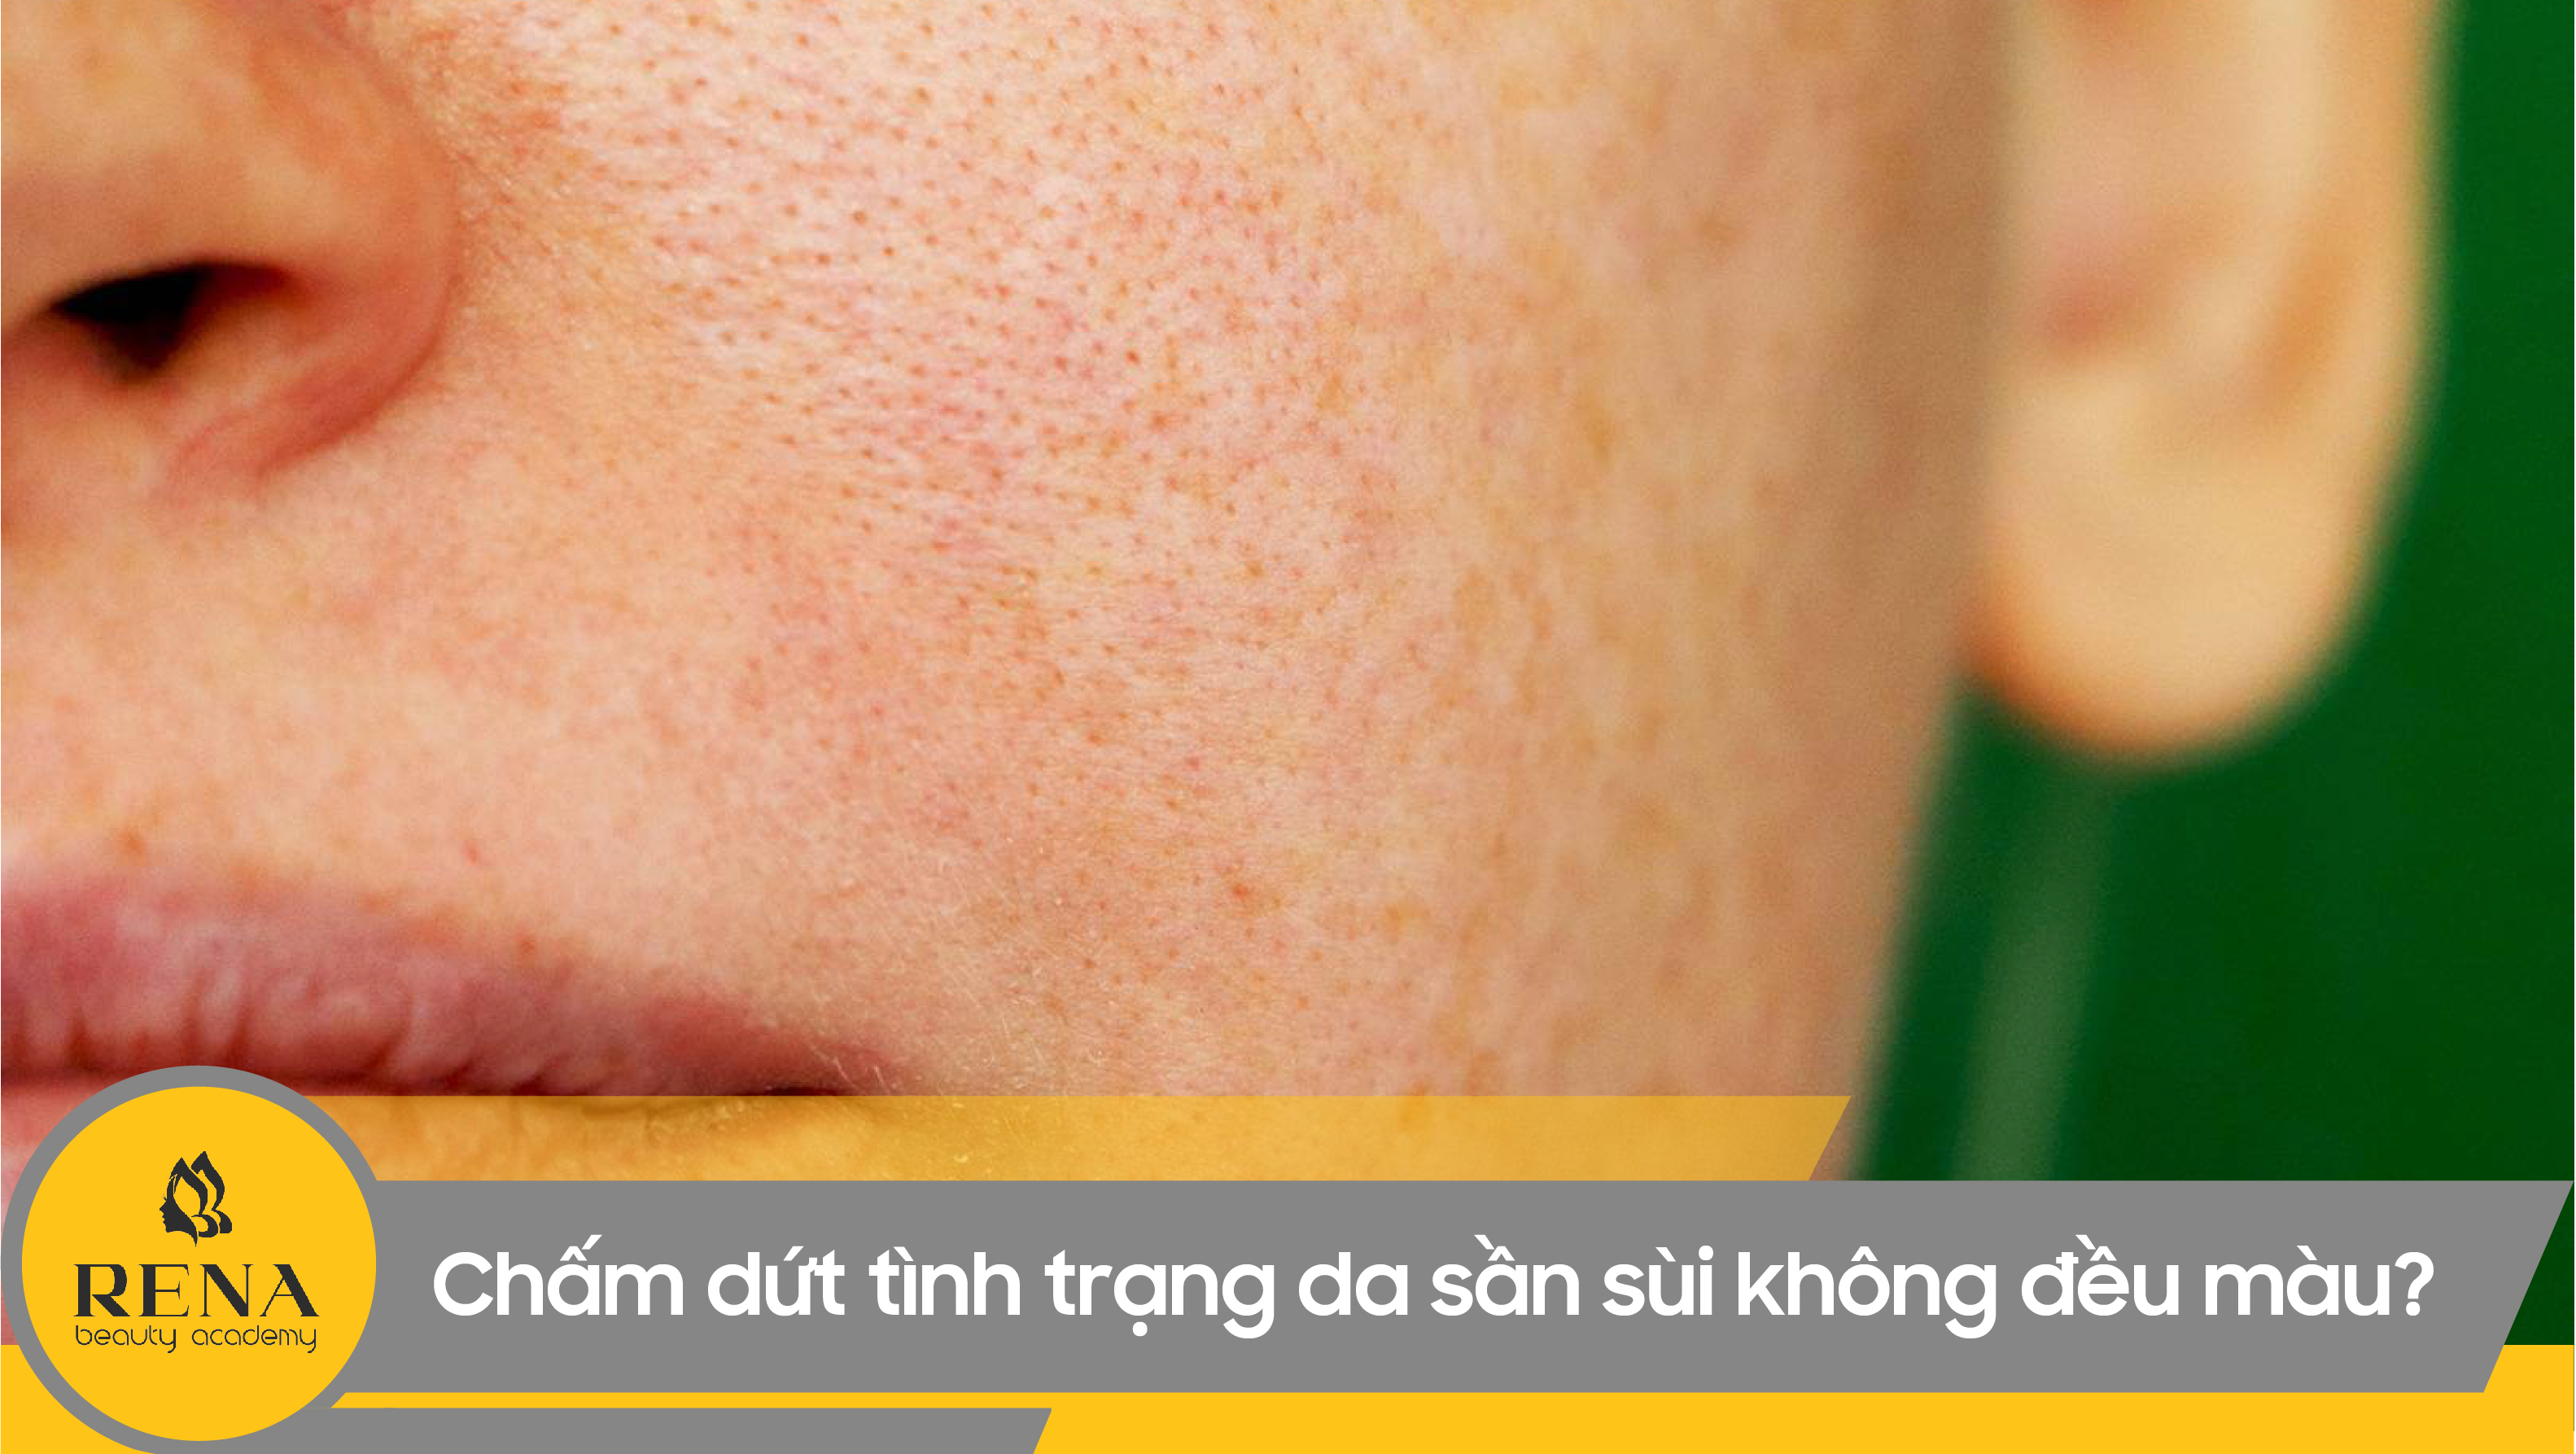 Làm thế nào để chấm dứt tình trạng da sần sùi không đều màu?